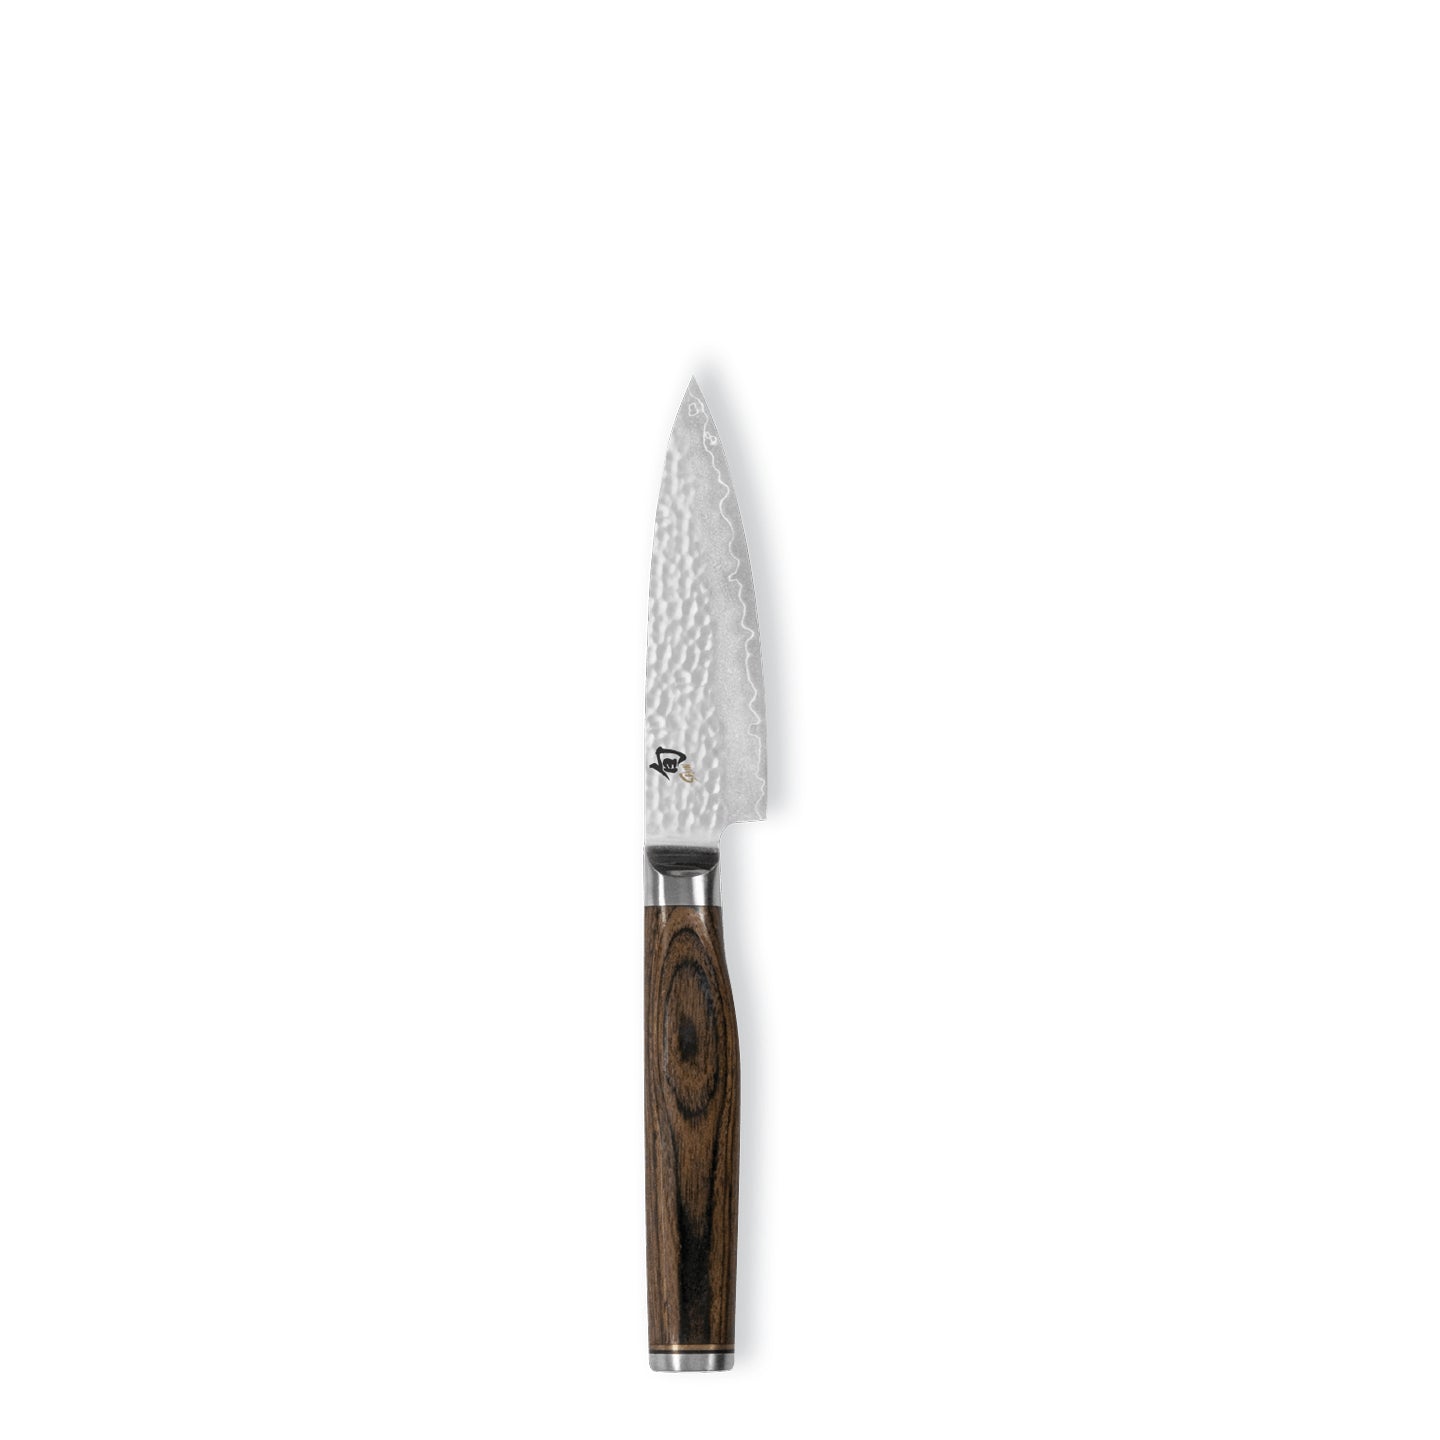 Kai Shun Premier Paring Knife / 9cm